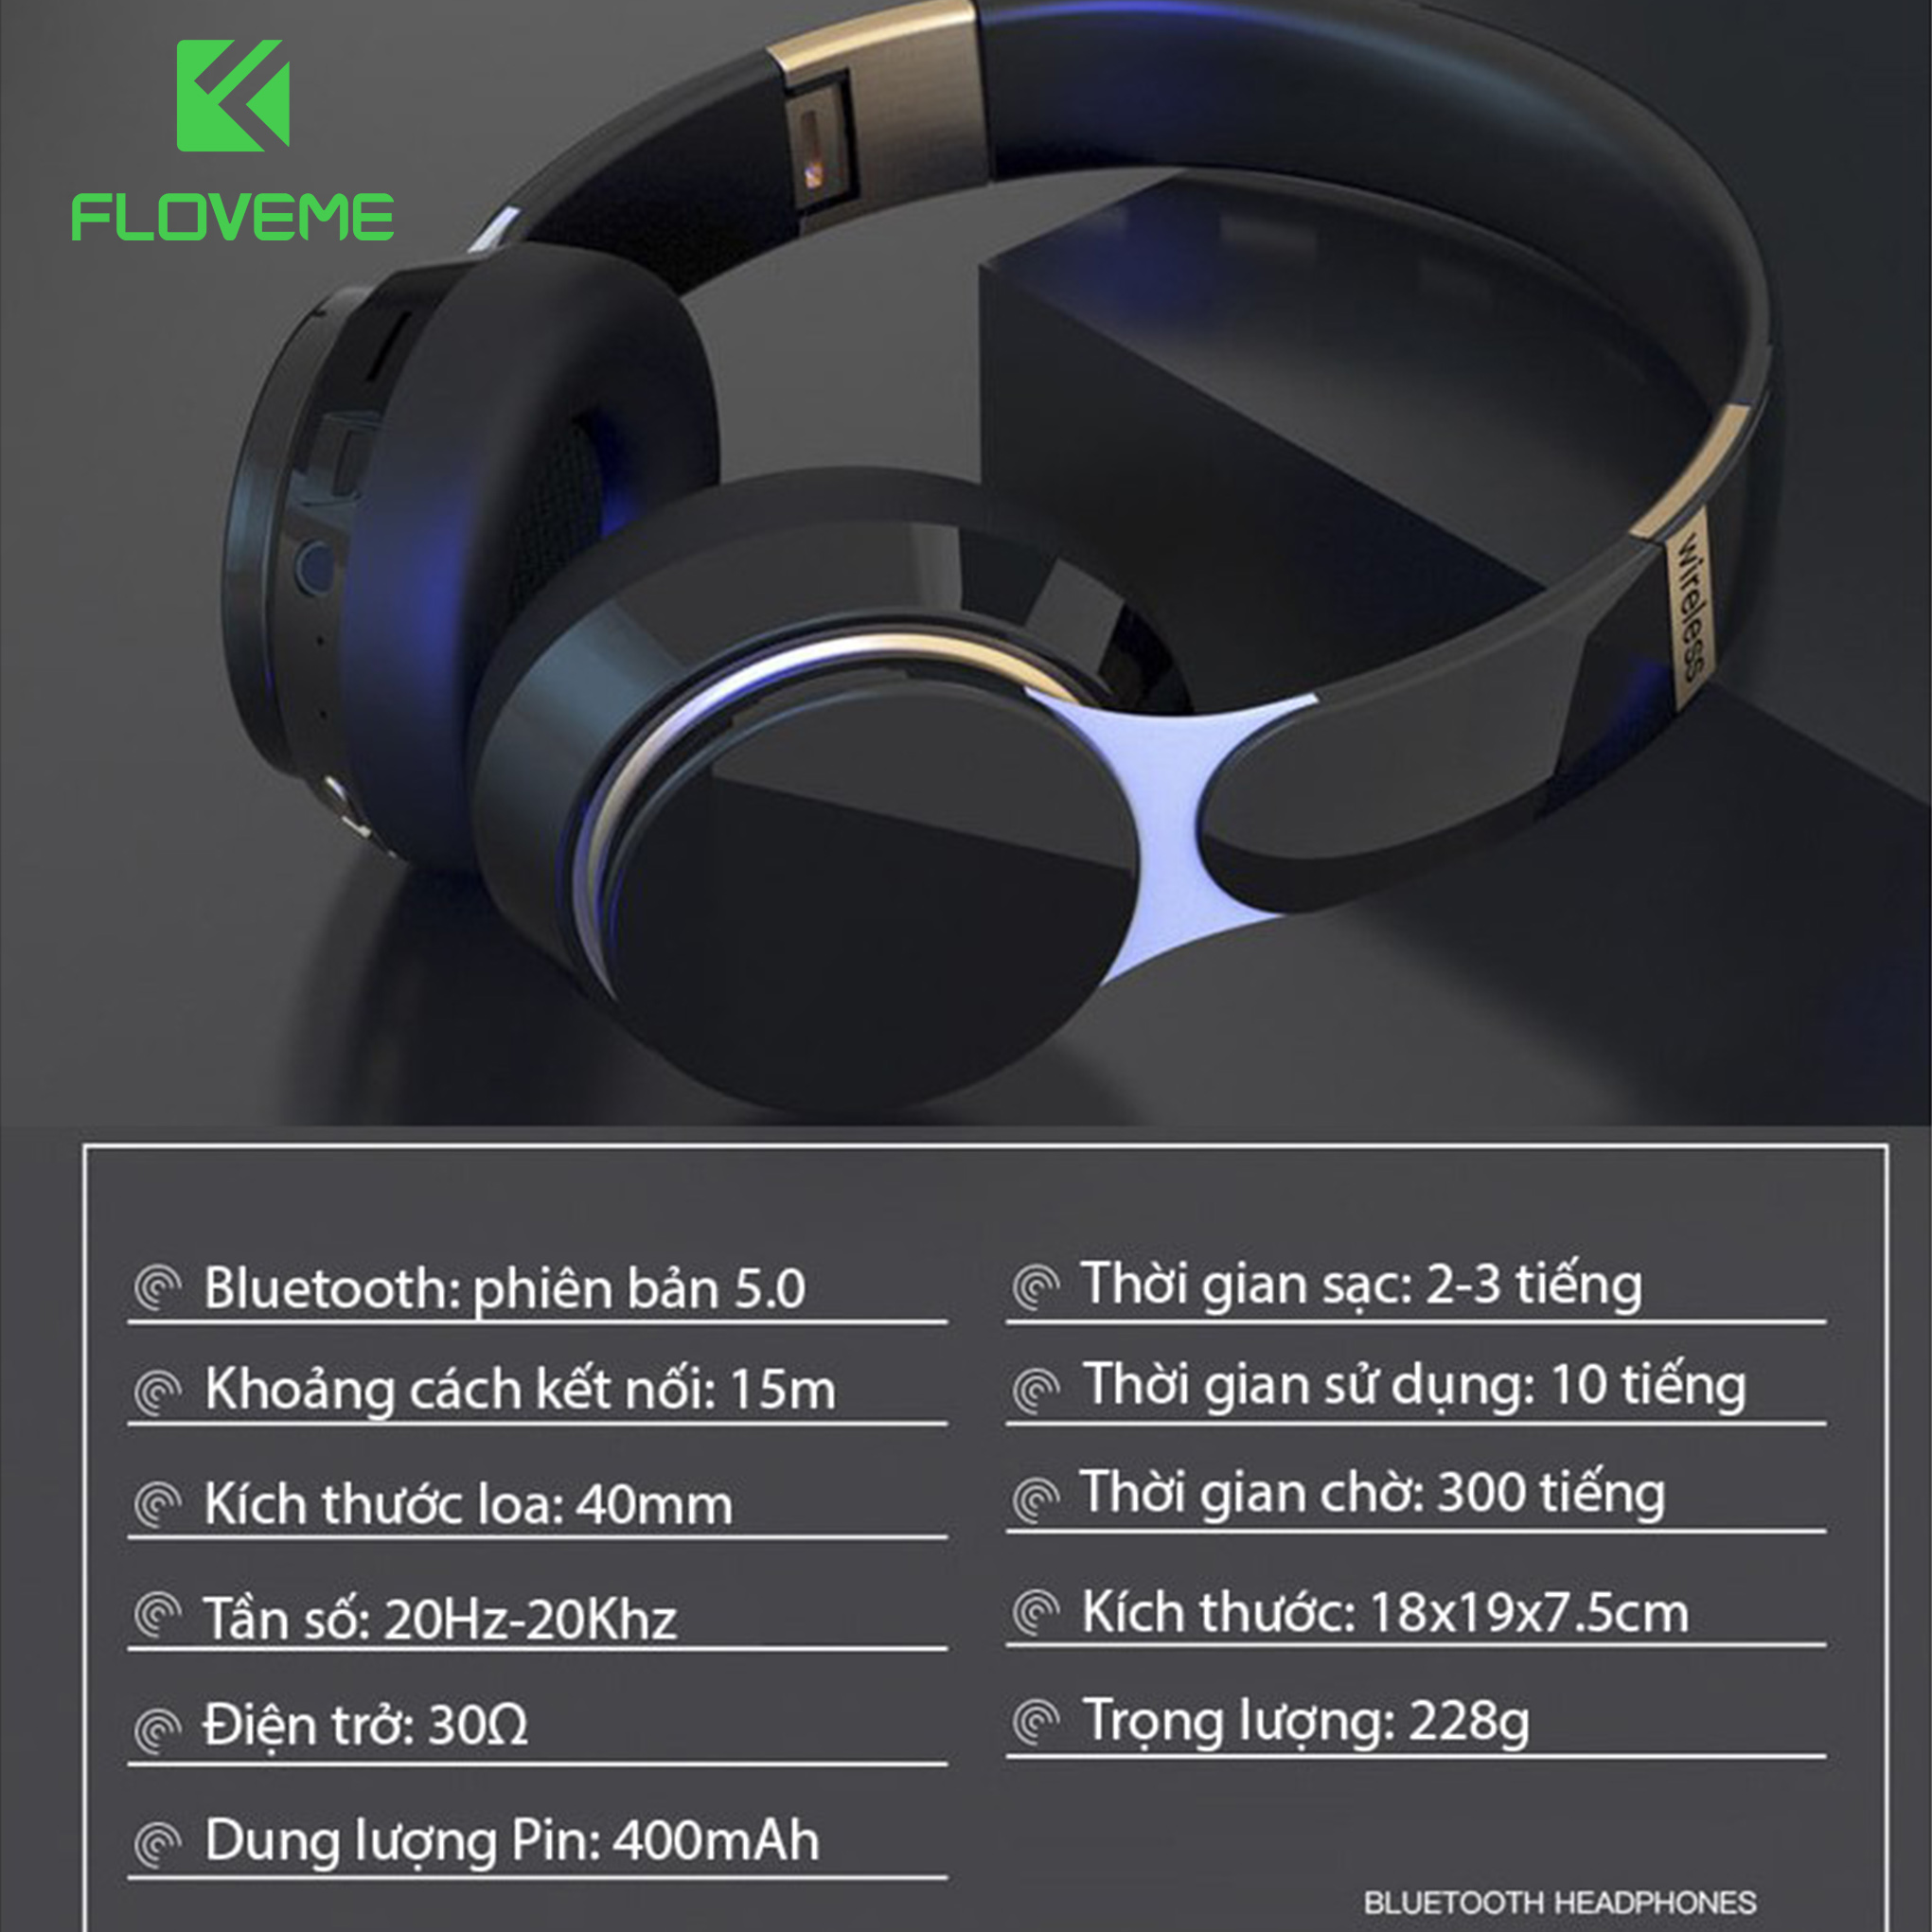 Tai nghe Floveme chụp tai Bluetooth FLOVEME B07 - Màu sắc trẻ trung nhiều lựa chọn- Công nghệ kết nối Bluetooth 5.0 - Micro chất lượng HD - Hàng chính hãng